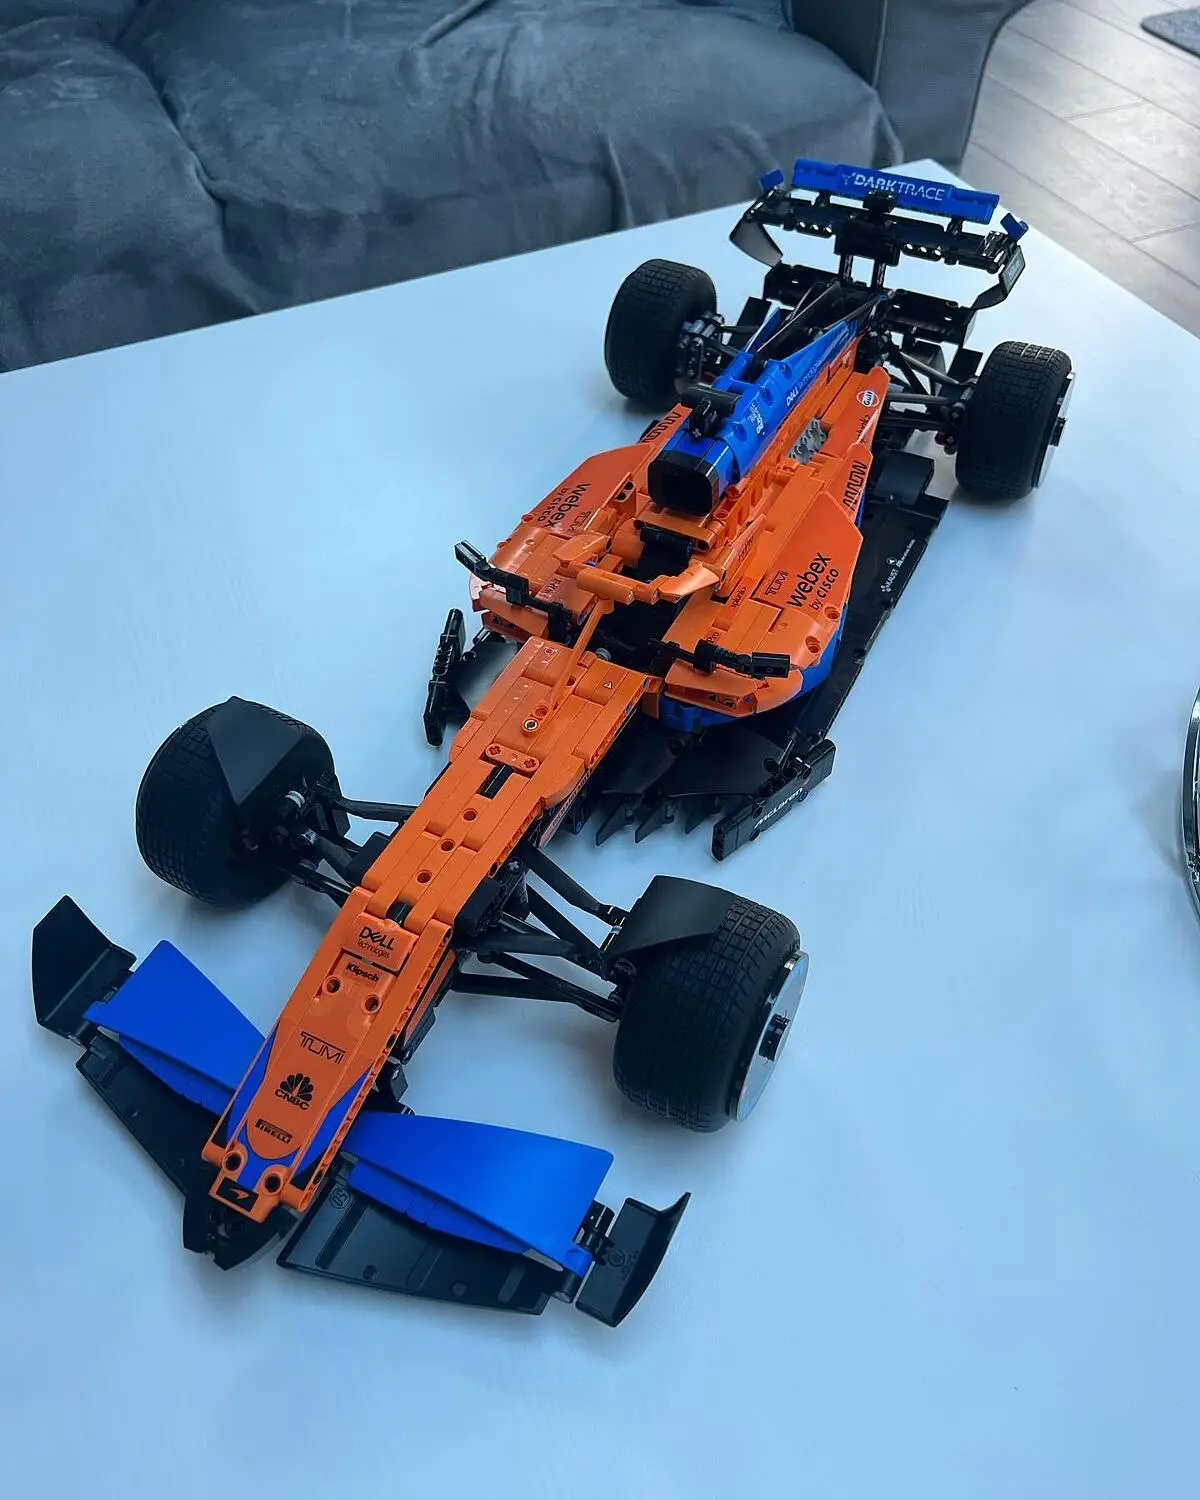 LEGO Technic - Coche de Carreras McLaren Formula 1 - 42141, Lego Dc Super  Heroes